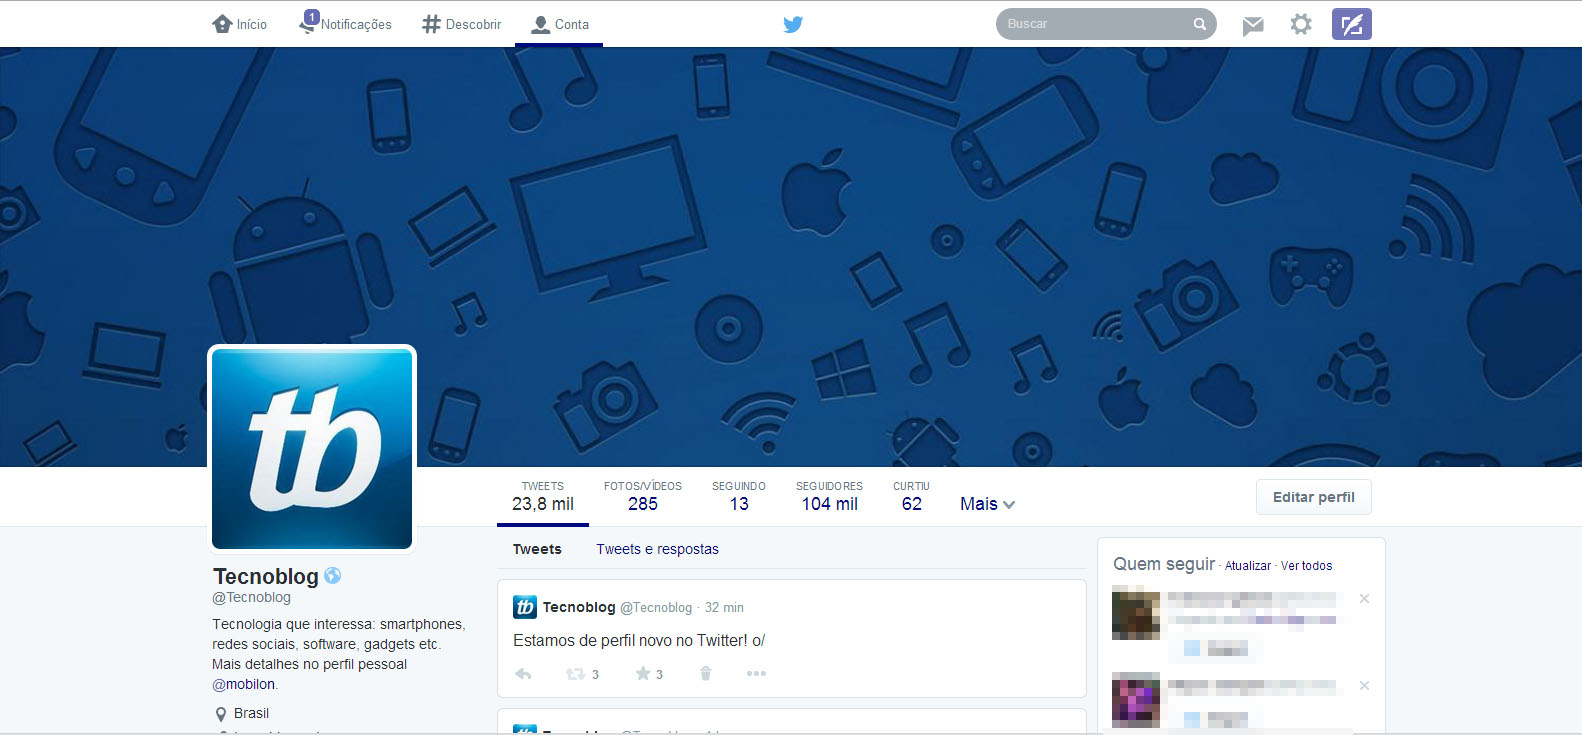 Você já pode ativar o novo design do Twitter no seu perfil